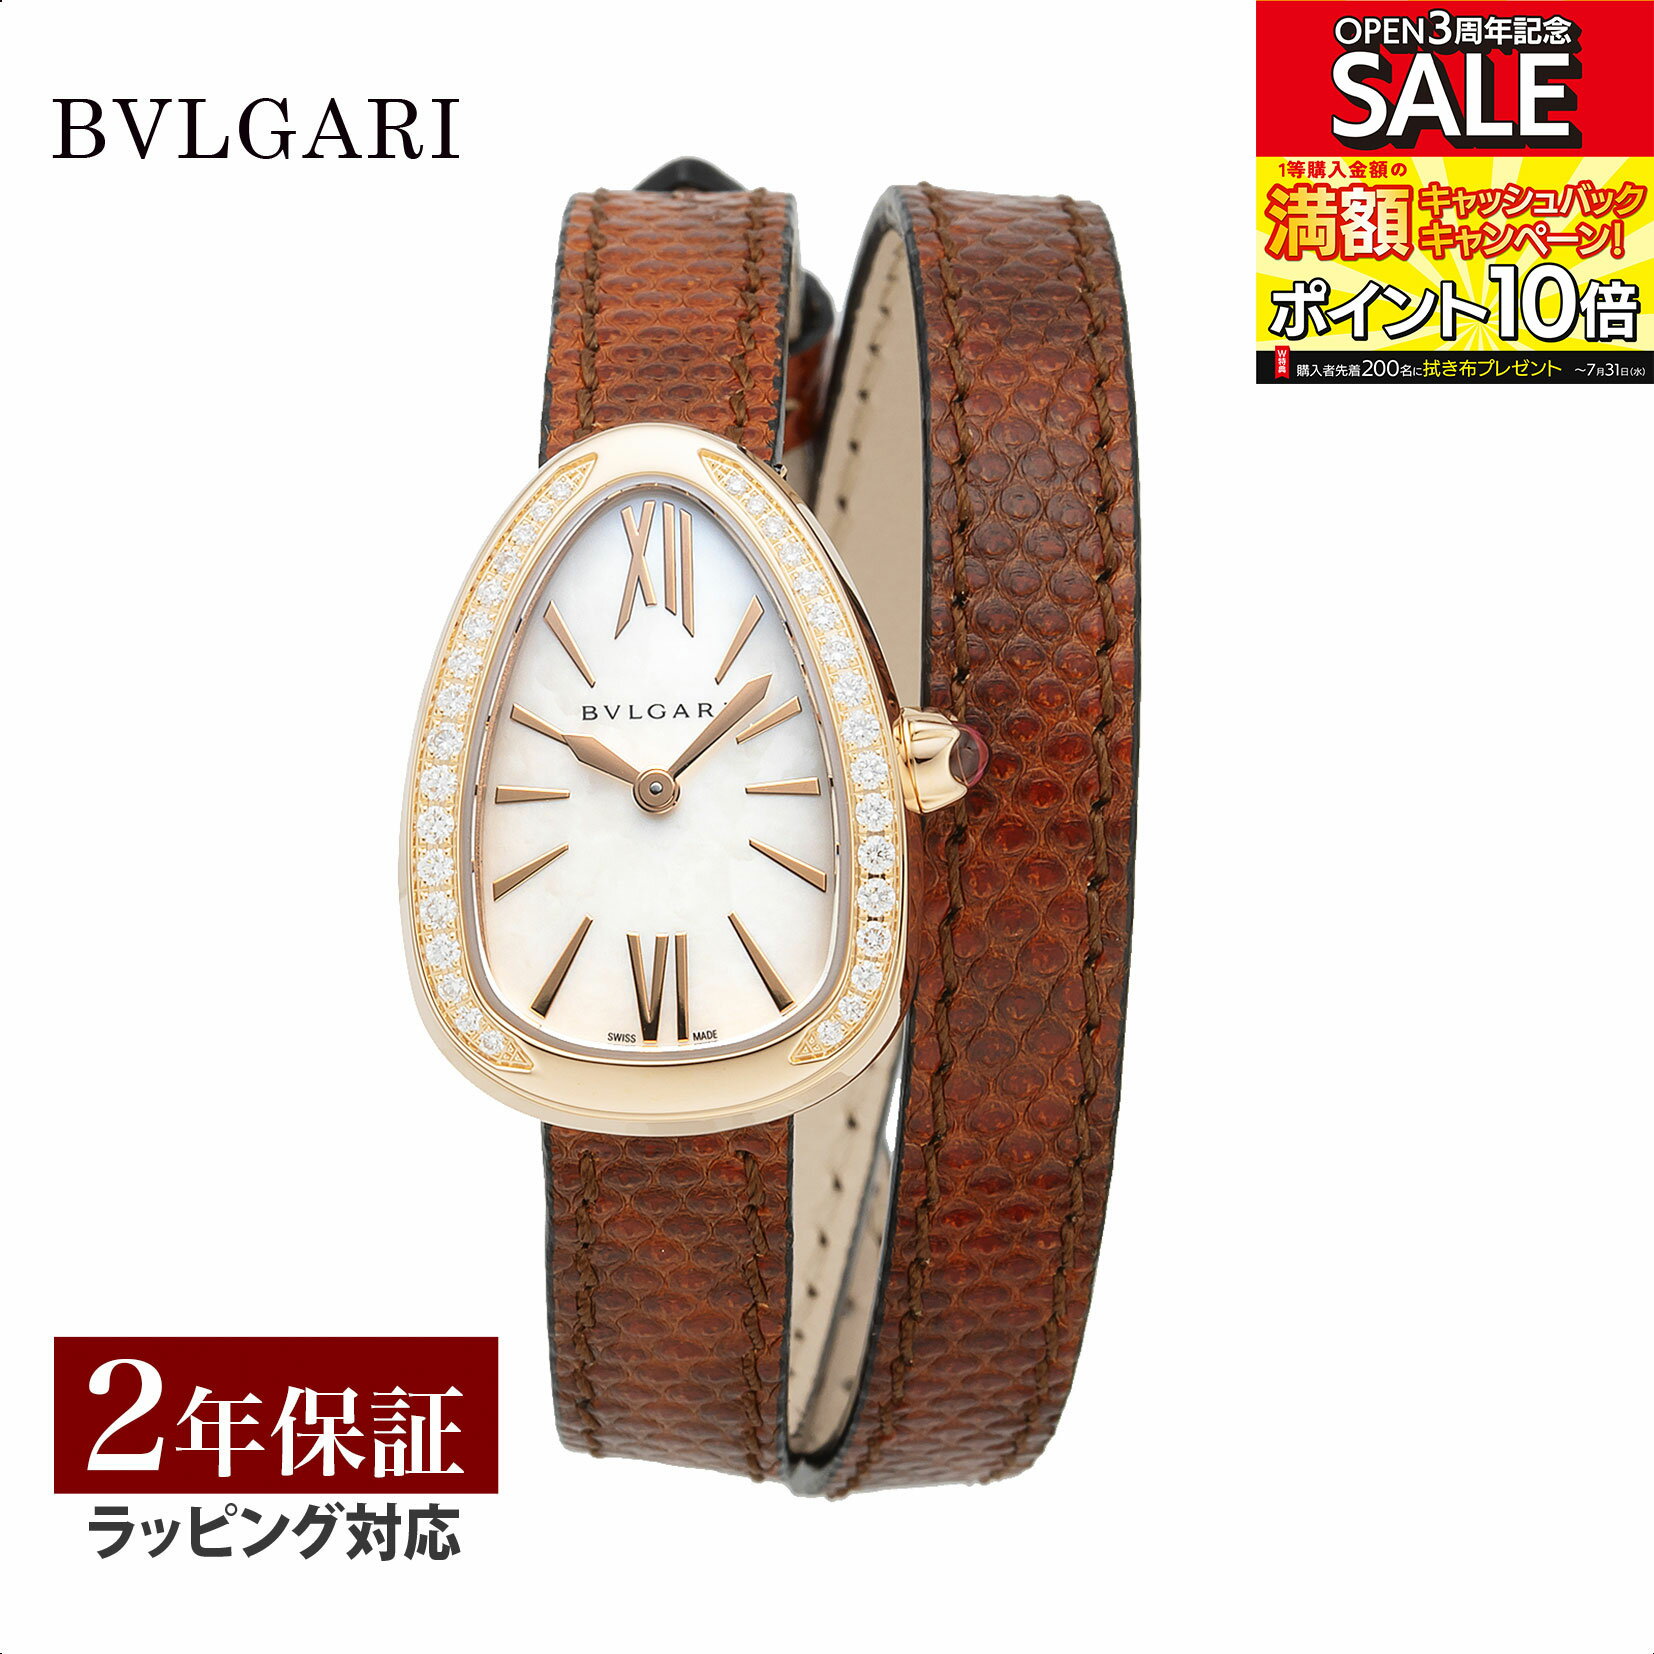 ブルガリ BVLGARI レディース 時計 Serpenti セルペンティ クォーツ ホワイト SPP27WPGDL 時計 腕時計 高級腕時計 ブランド